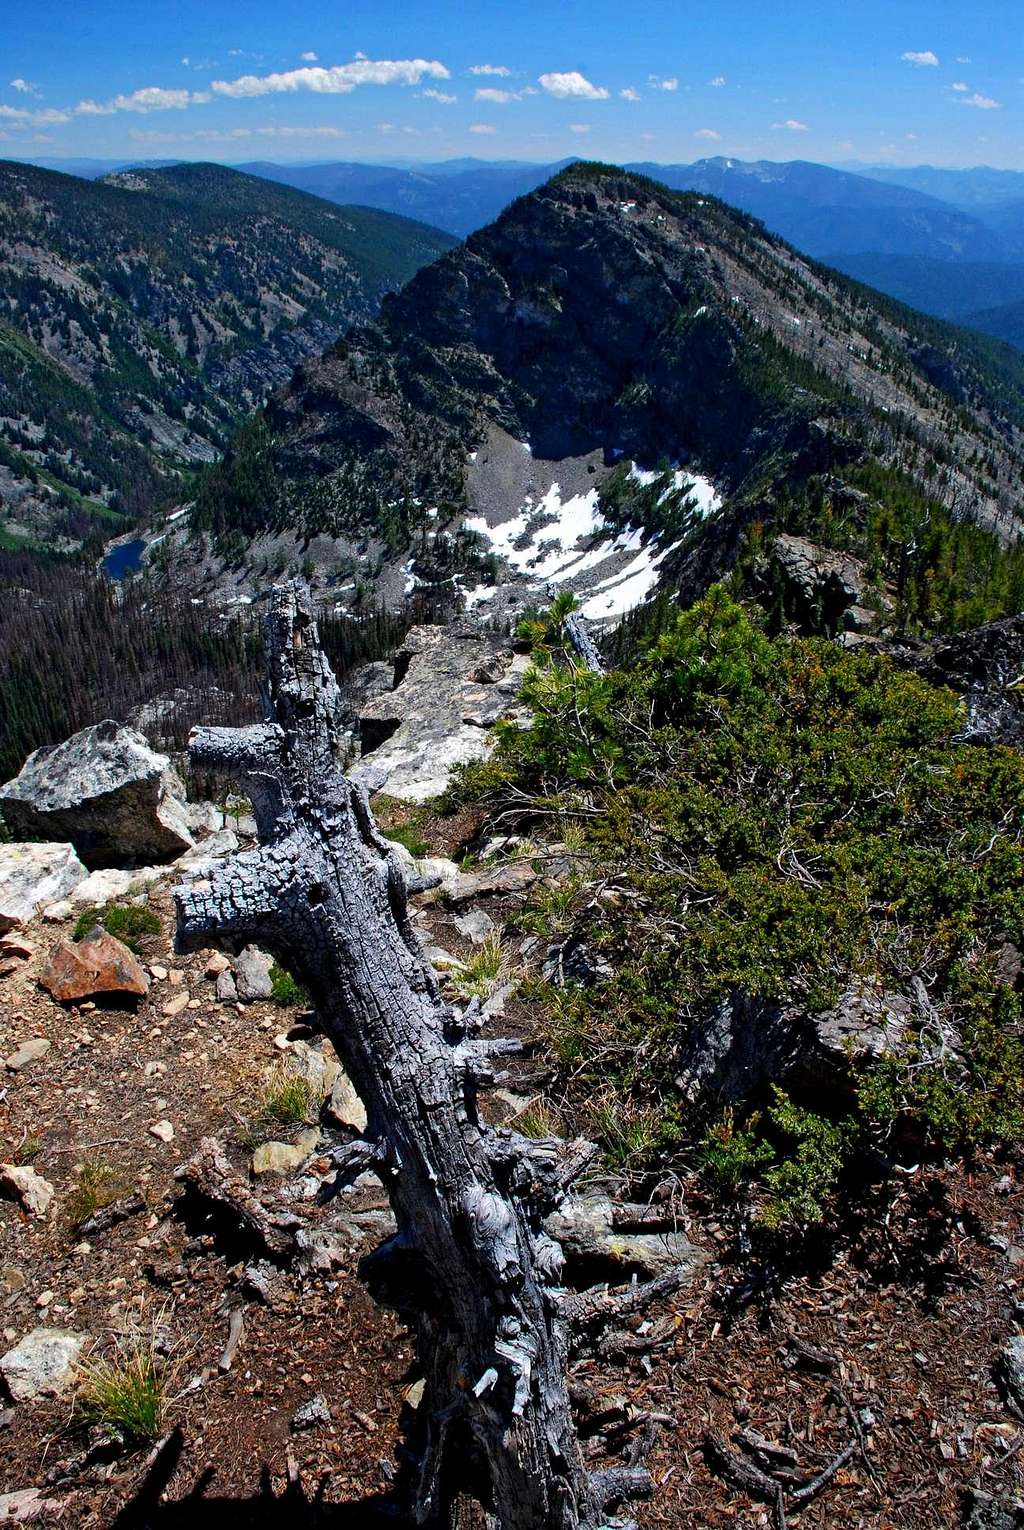 Dead Tree and Peak